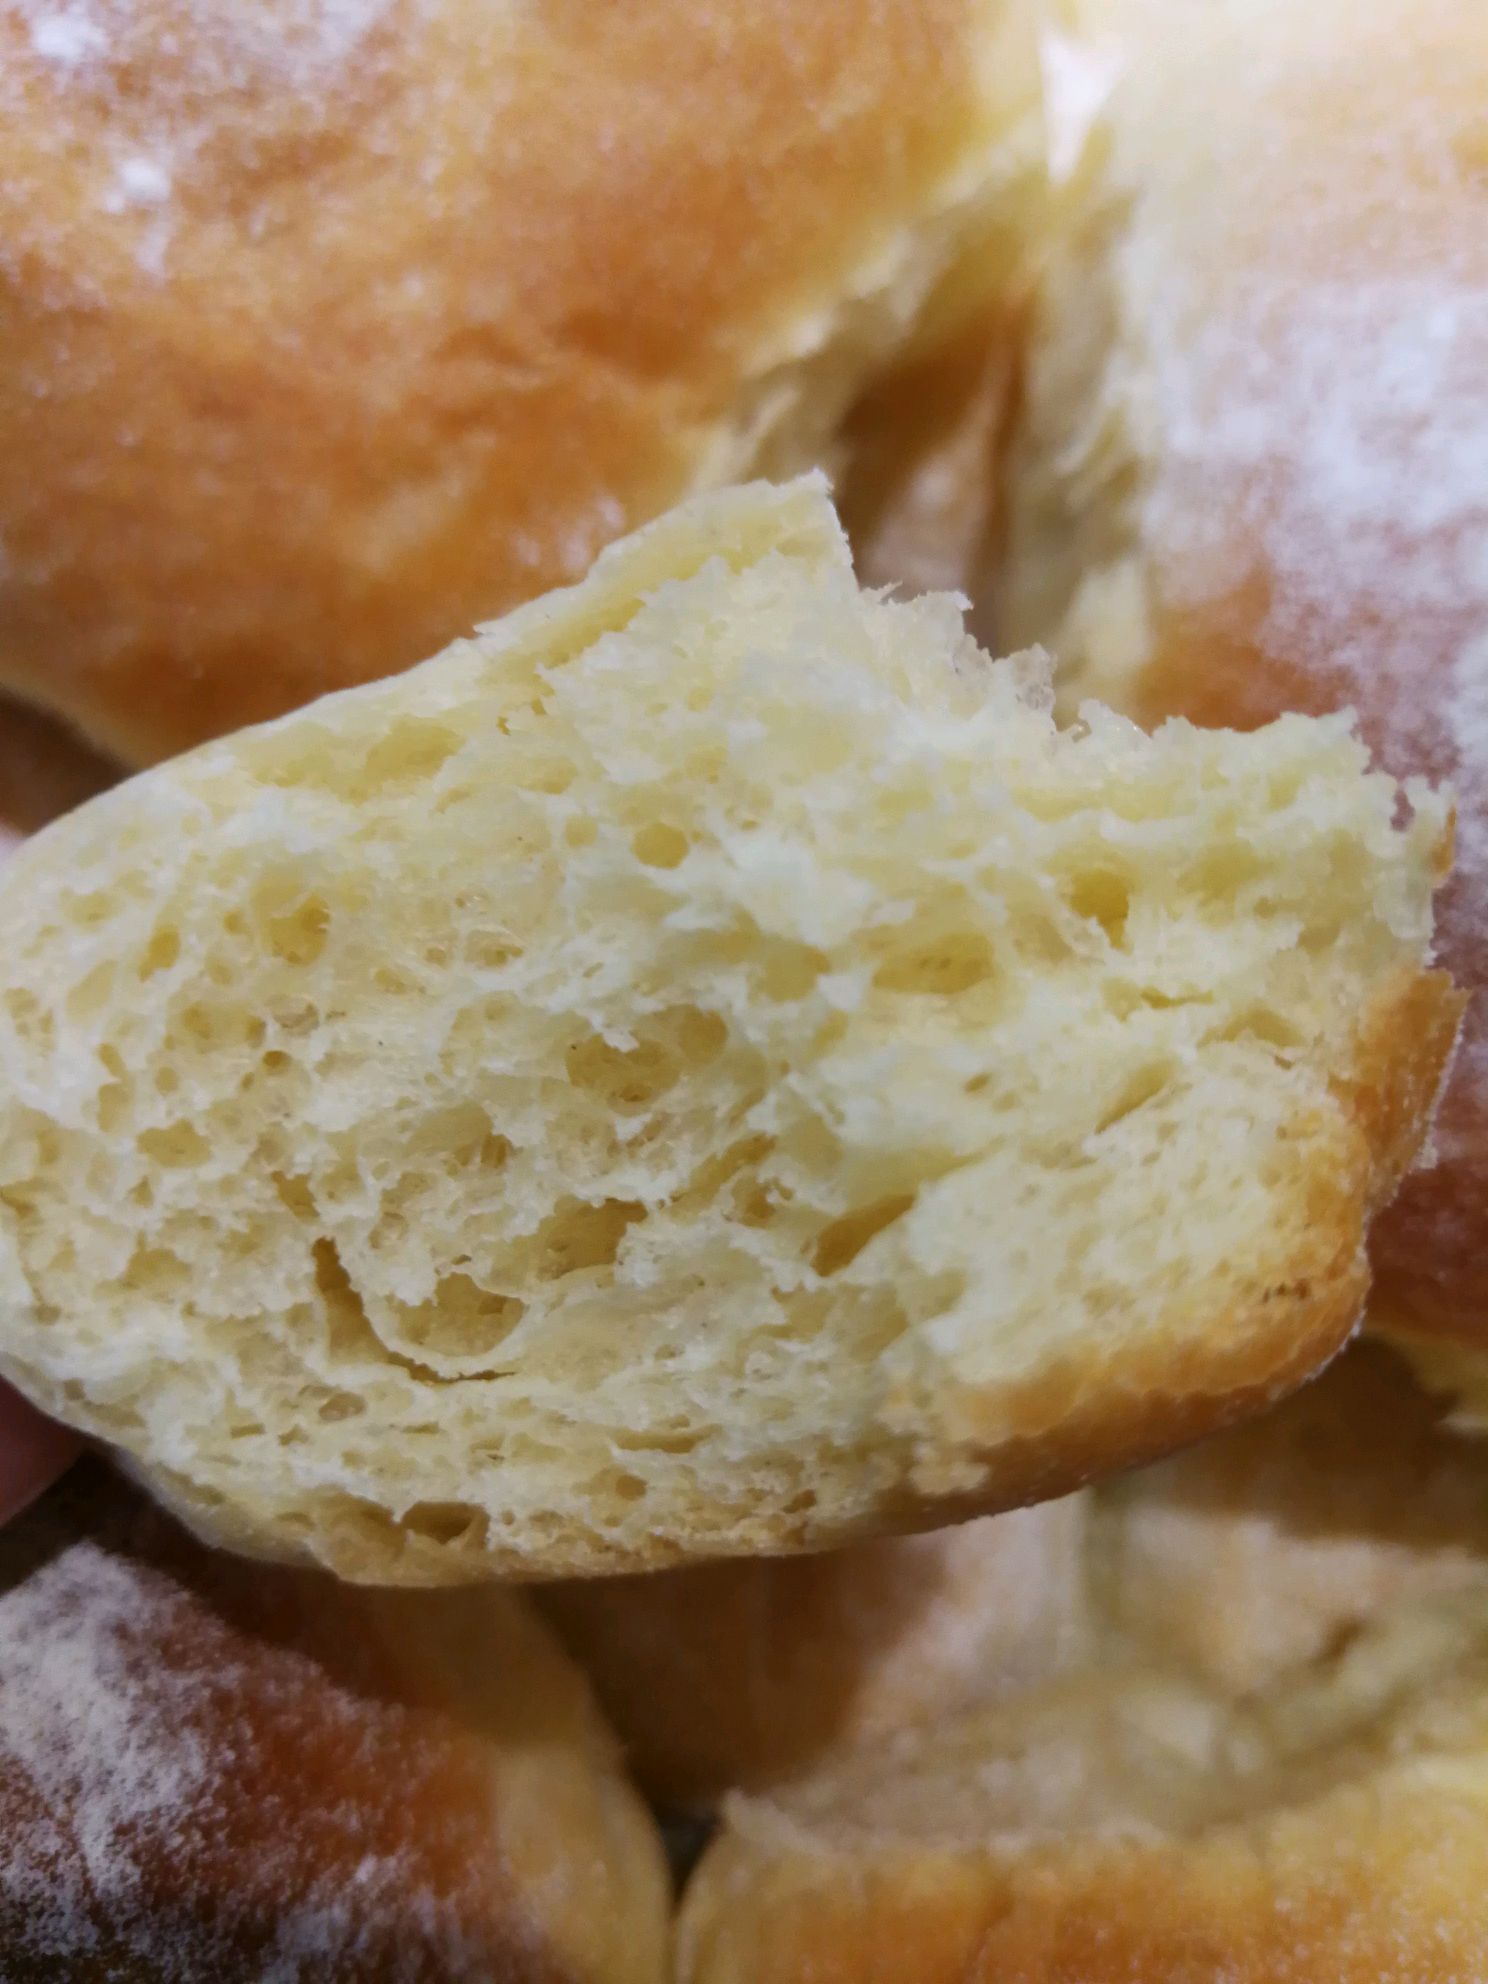 夏巴塔面包,夏巴塔面包的家常做法 - 美食杰夏巴塔面包做法大全